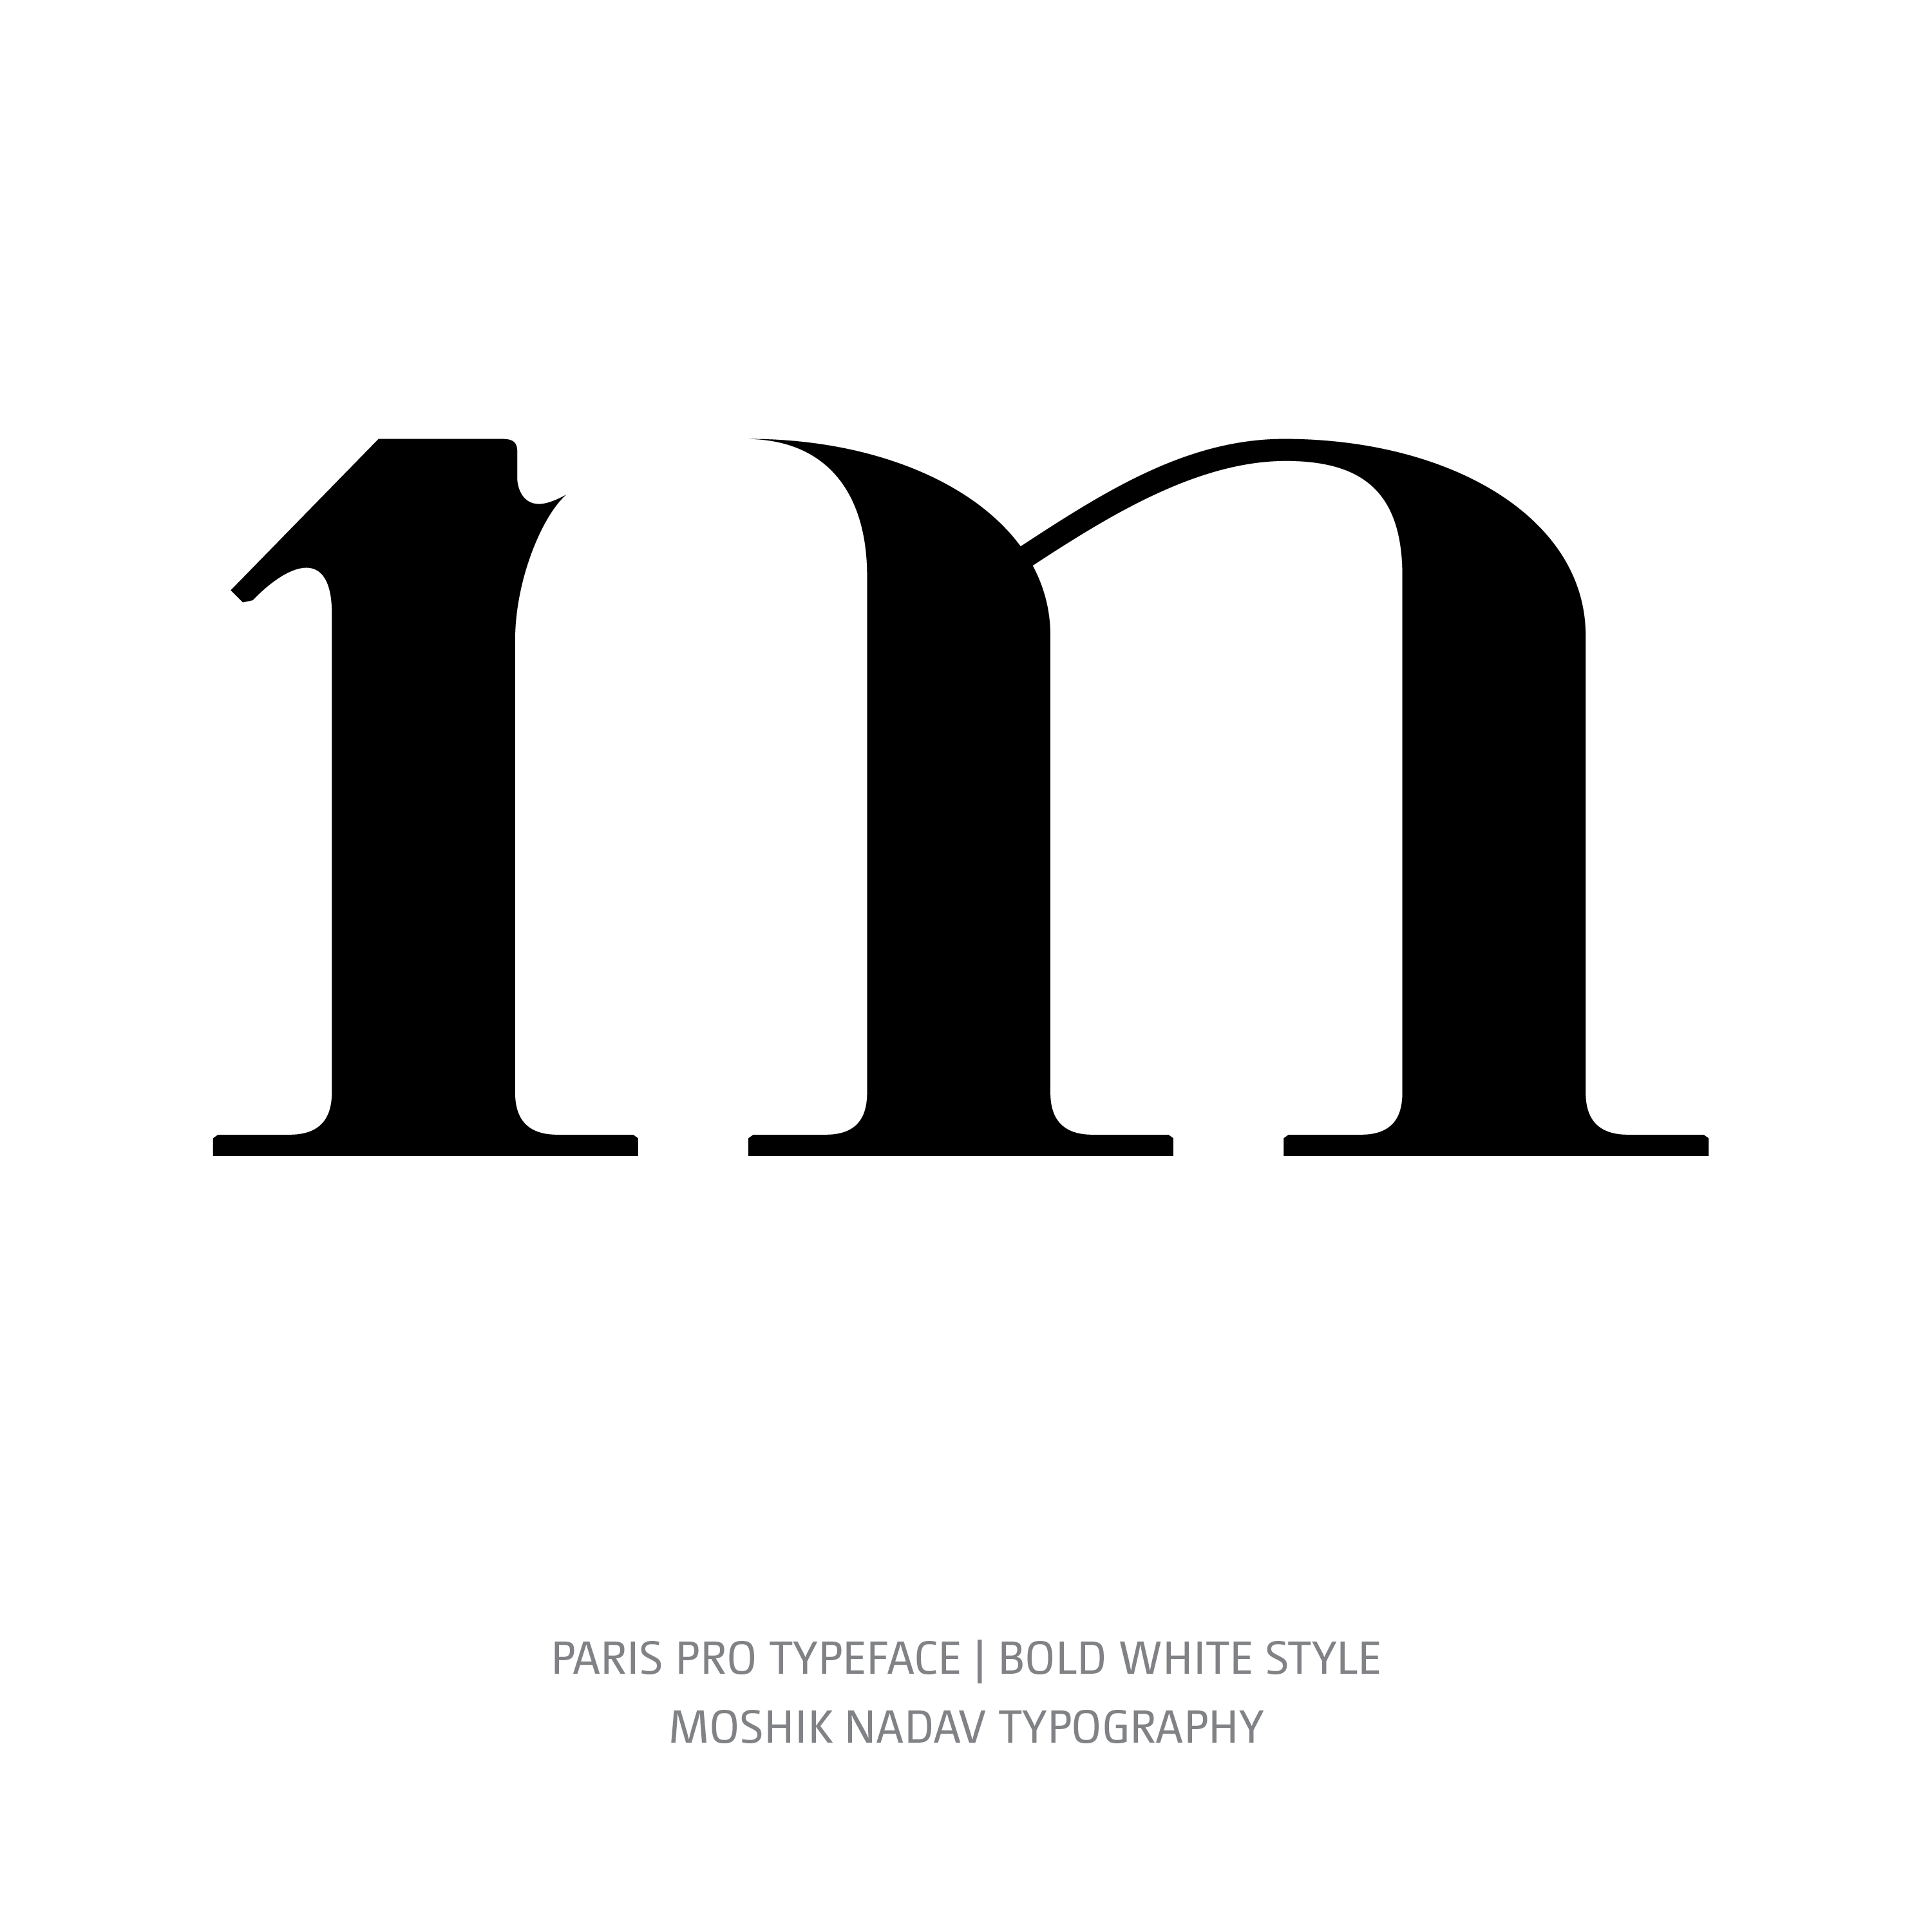 Paris Pro Typeface Bold White m